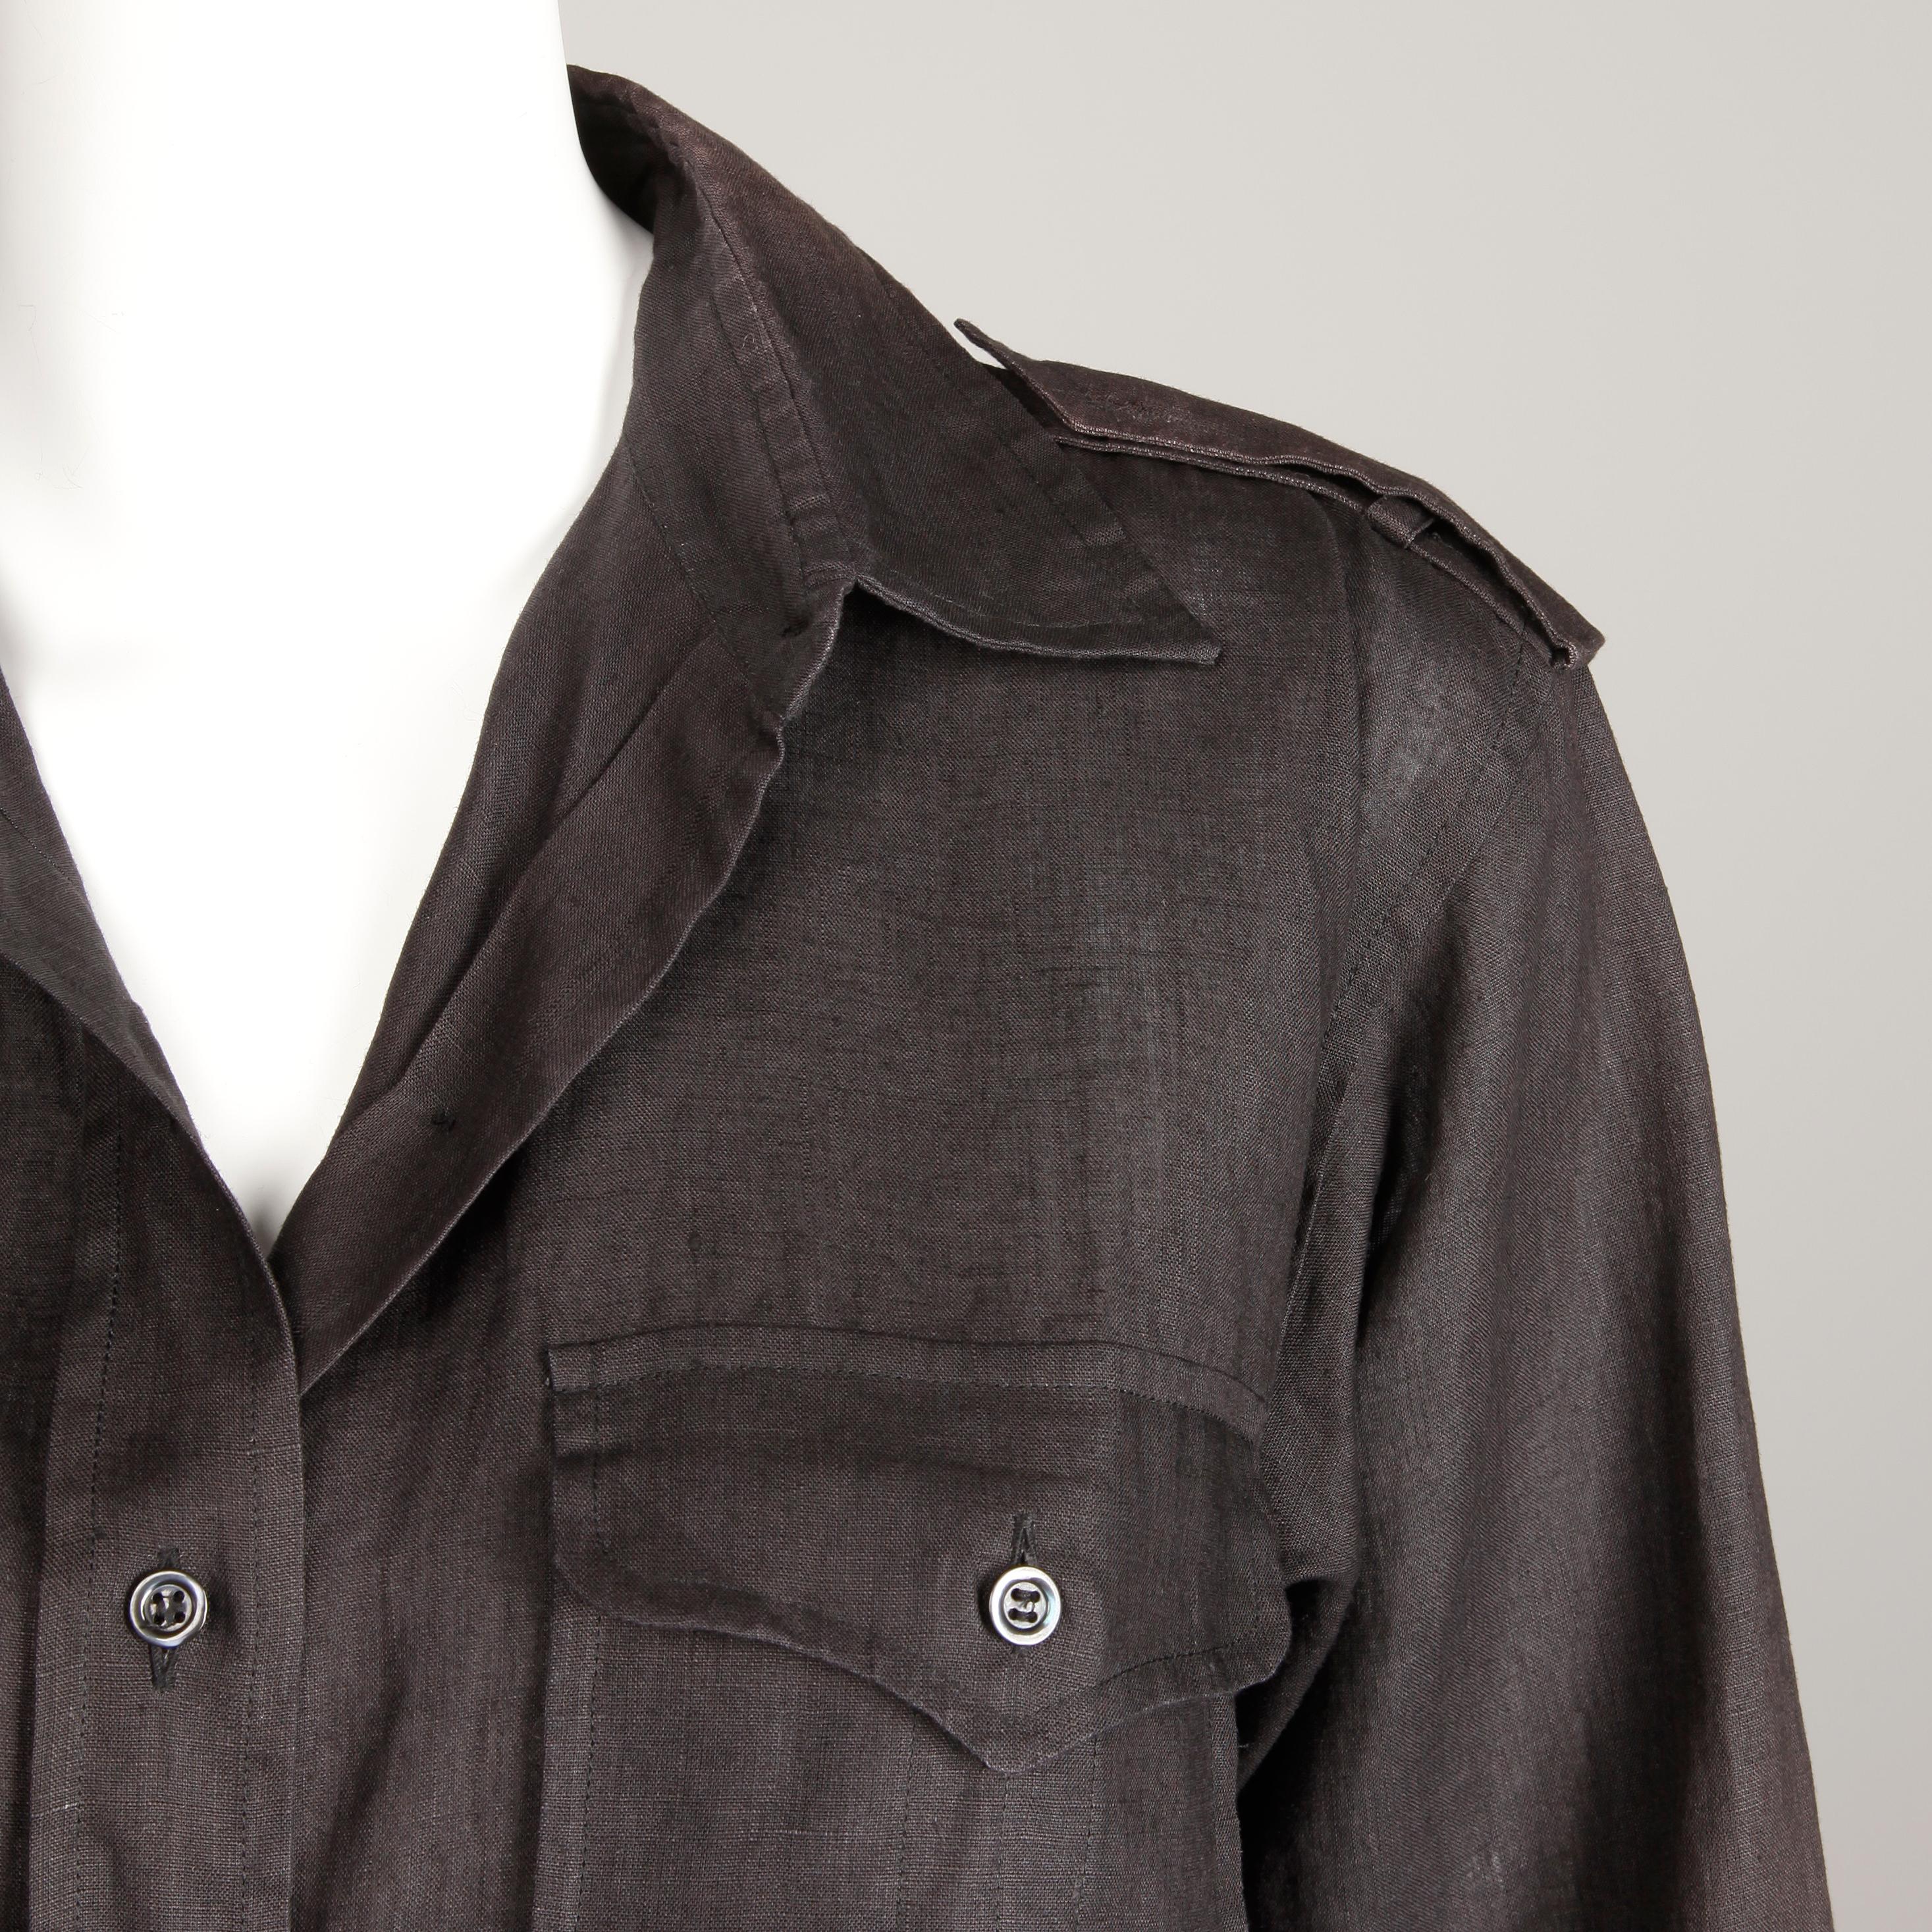 Women's or Men's 1970s Yves Saint Laurent Vintage Black Linen Safari Button Up Blouse/ Top/ Shirt